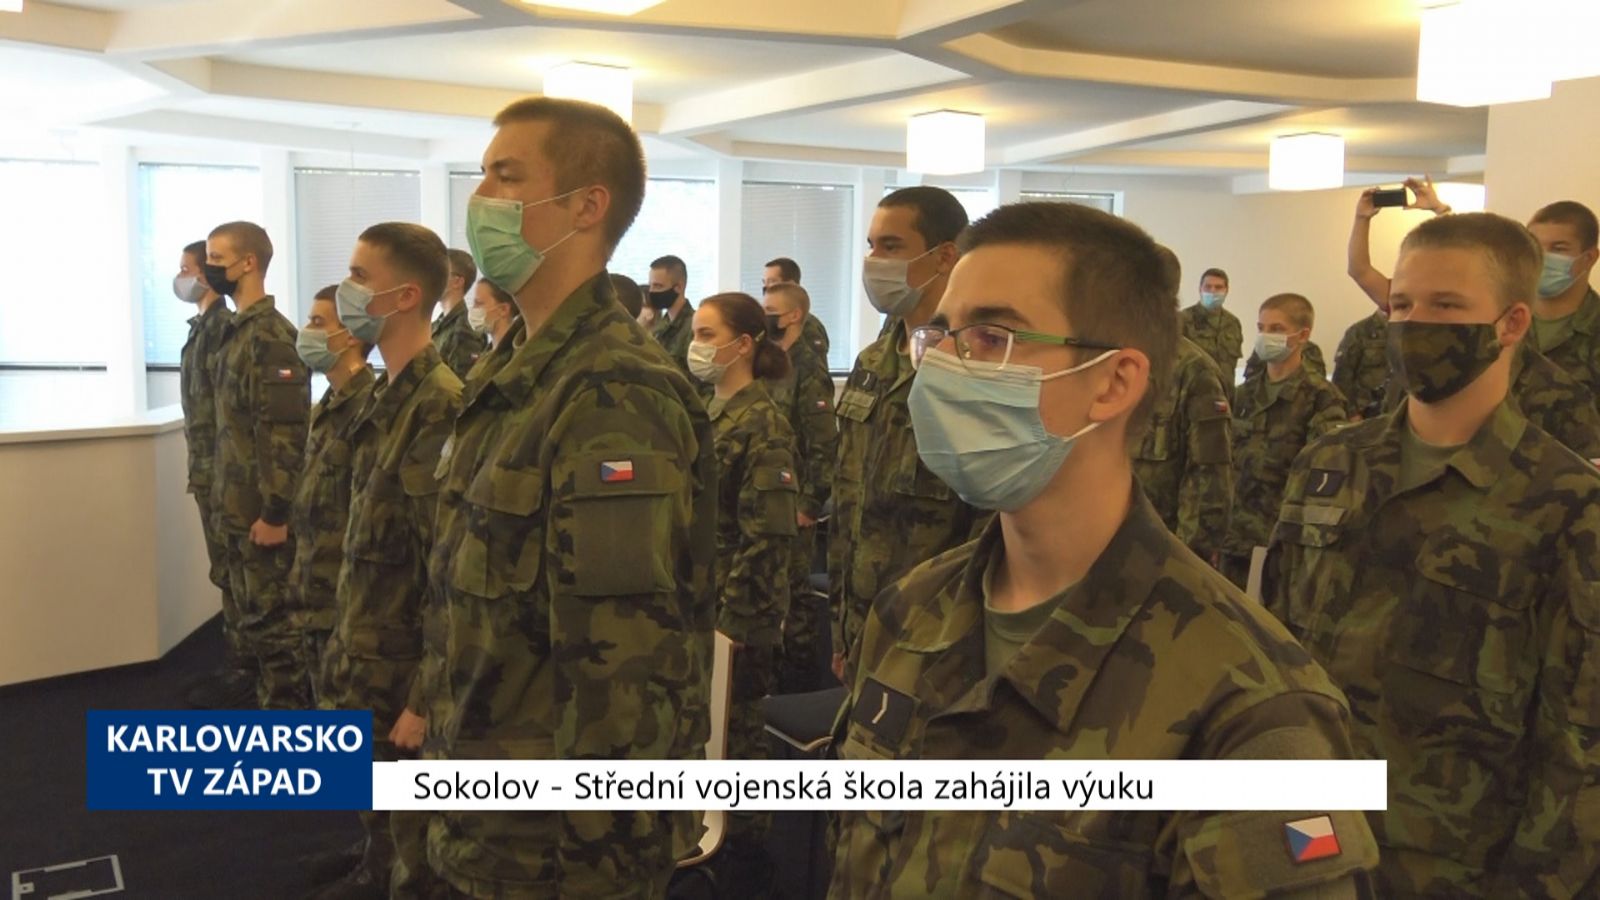 Sokolov: Střední vojenská škola zahájila výuku (TV Západ)